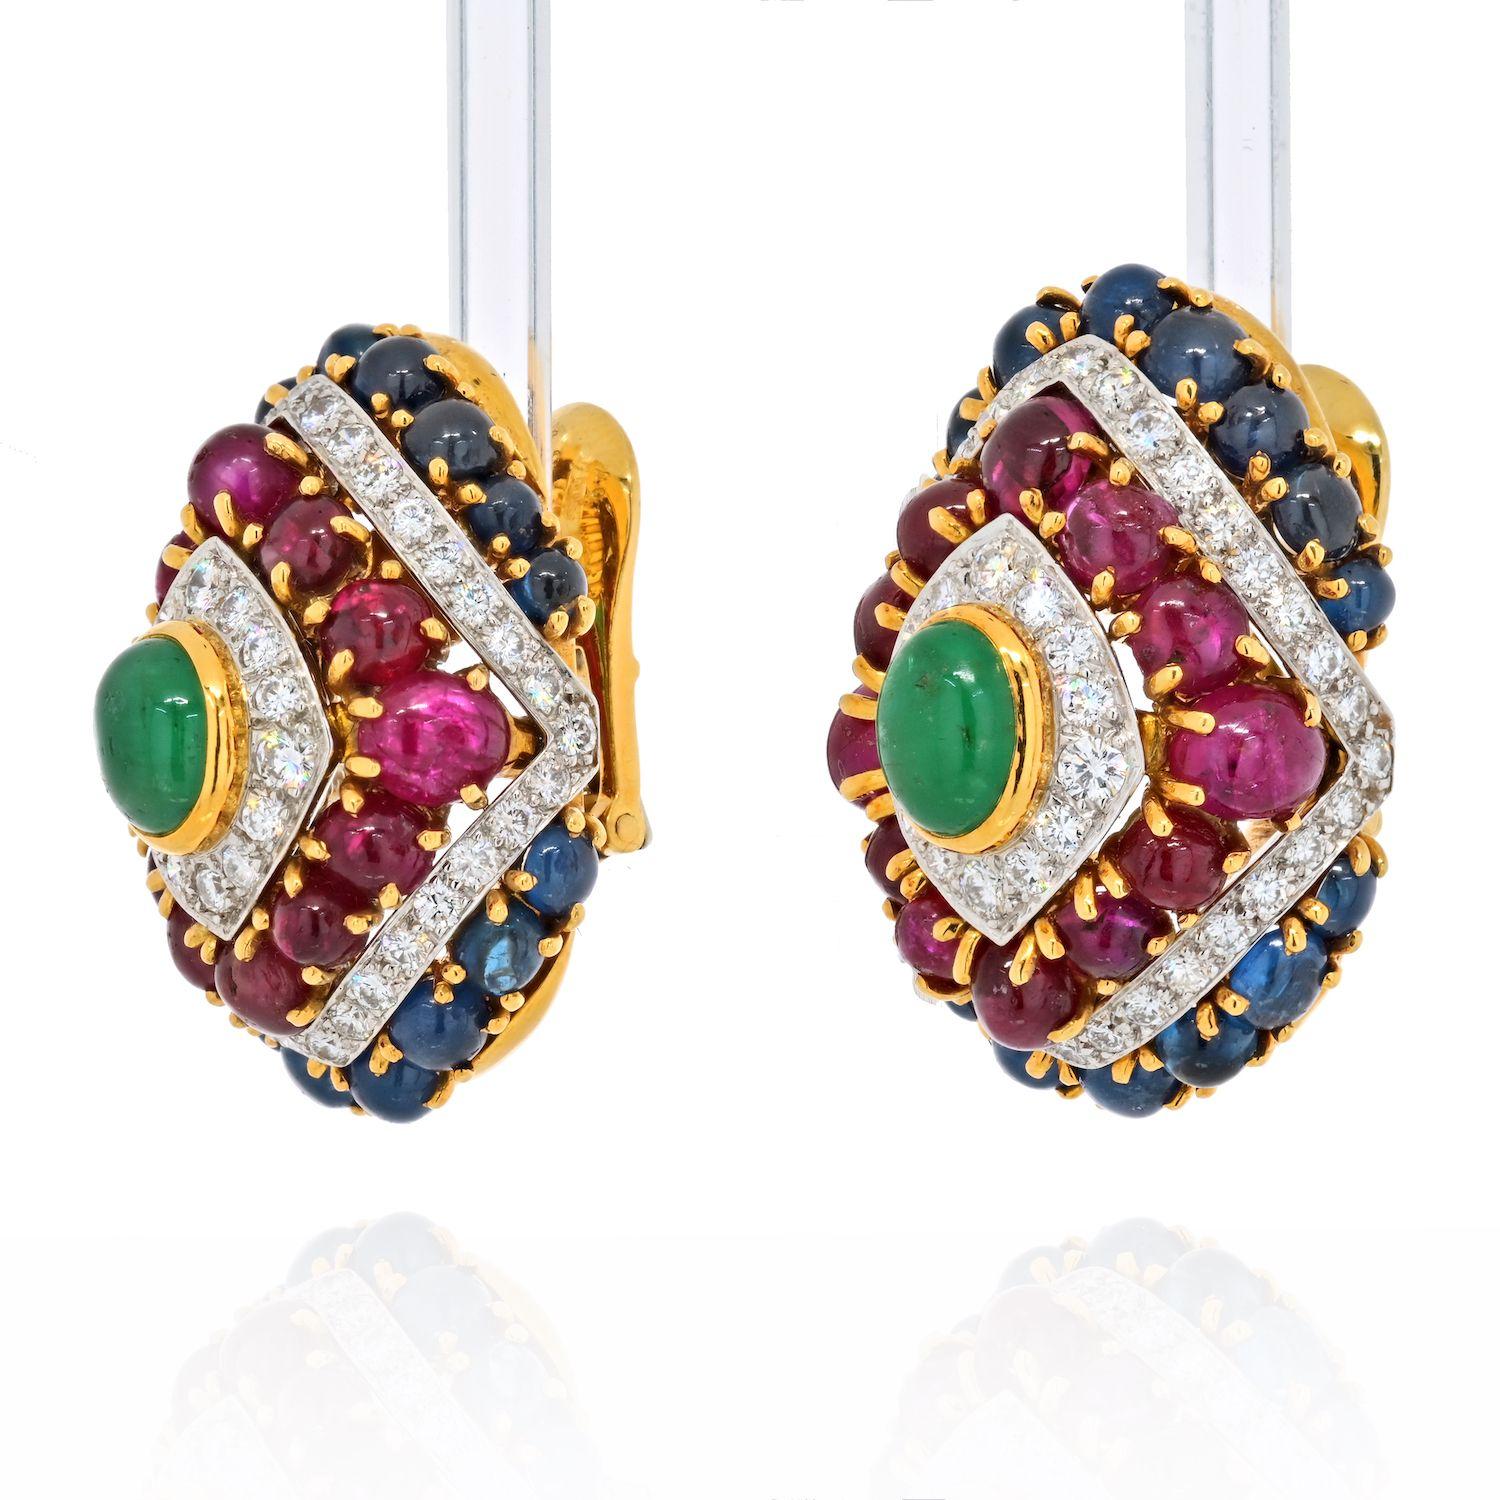 Ces boucles d'oreilles extraordinaires de David Webb sont montées avec des pierres de couleur telles que des rubis, des saphirs et des émeraudes et rehaussées de diamants. Il est impossible de ne pas voir ces boucles d'oreilles lorsque la personne